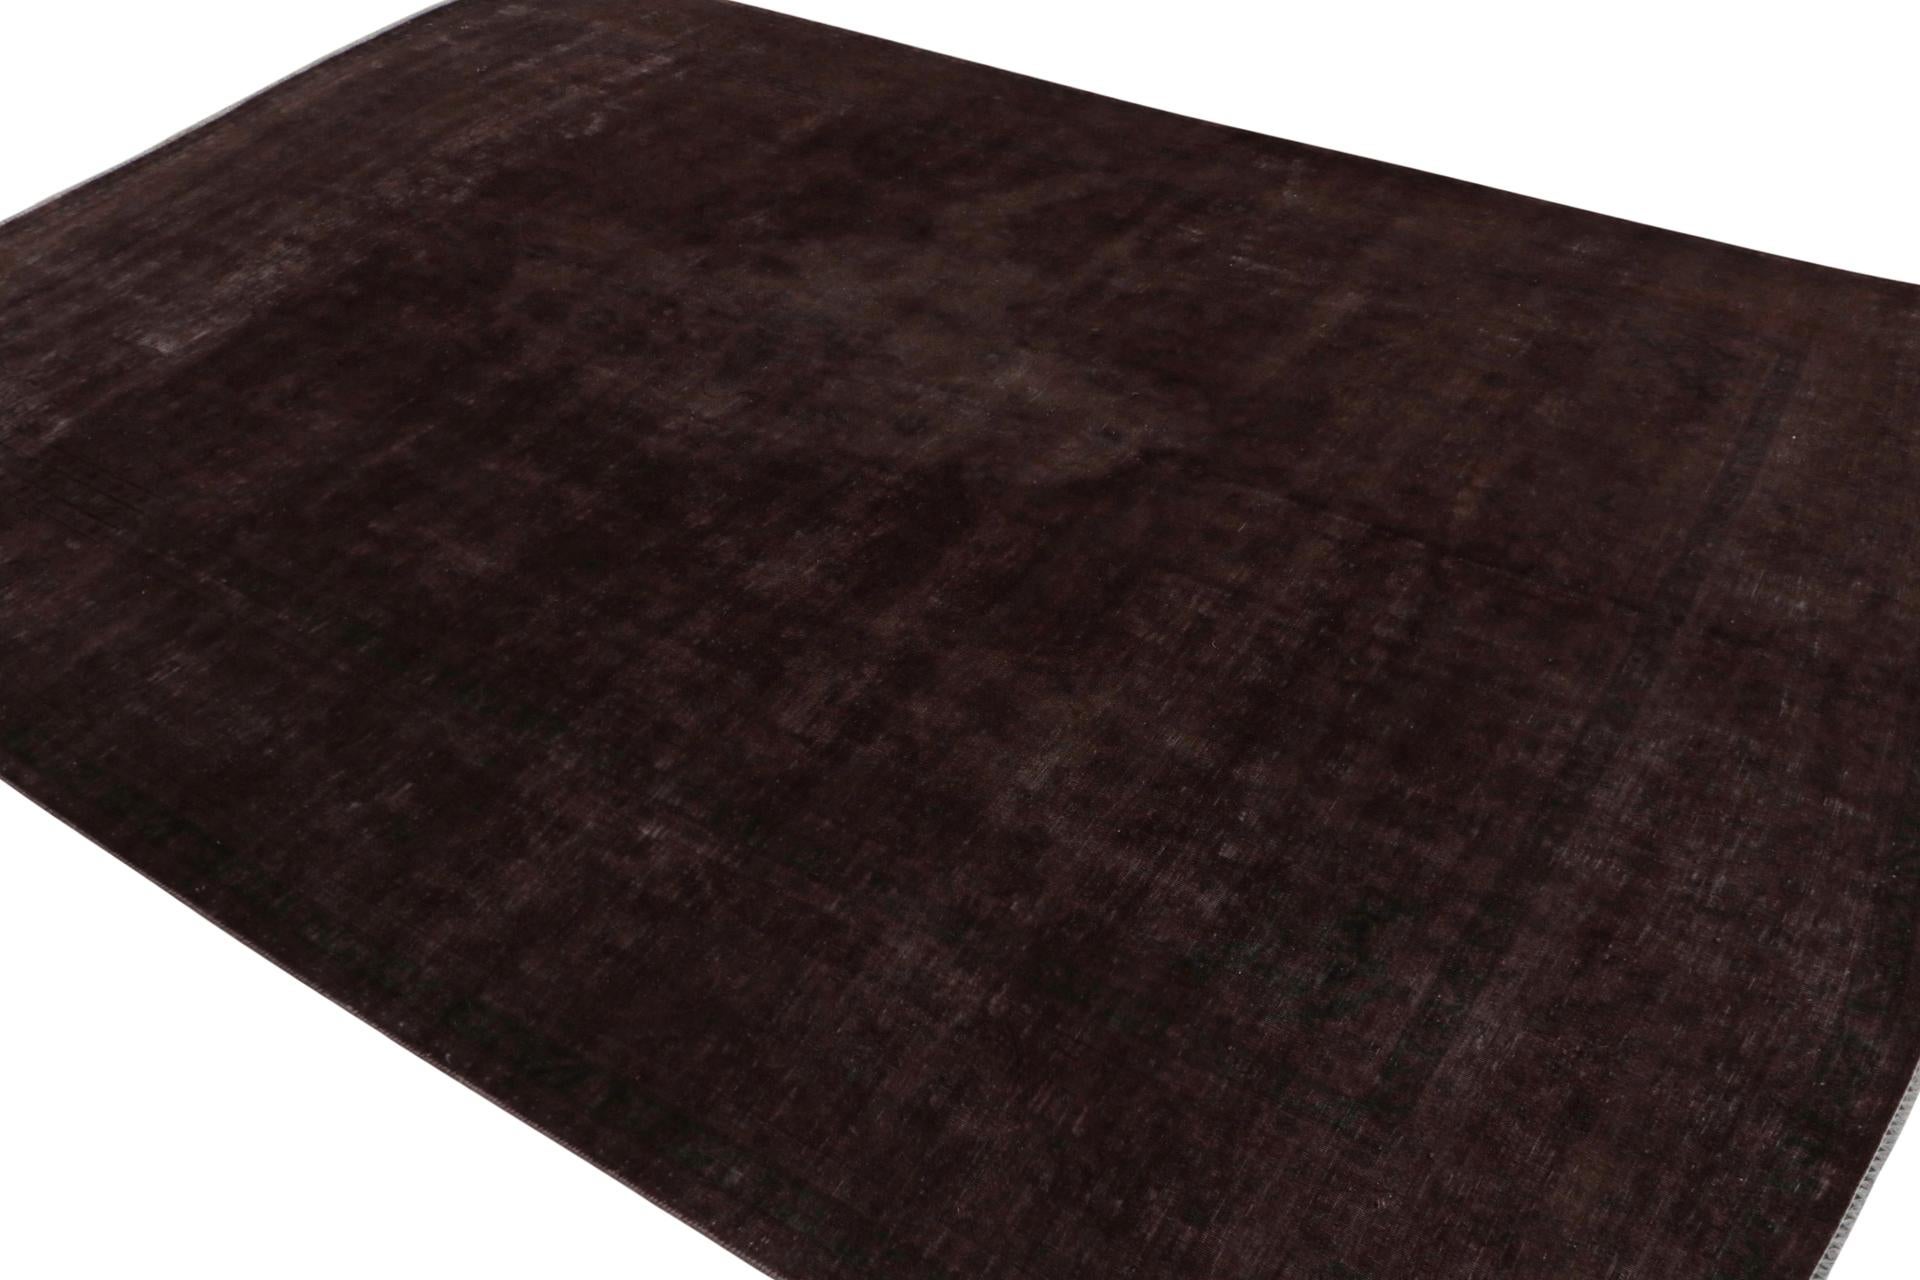 De notre nouvelle collection de tapis surteints, un tapis persan vintage 9x13 datant d'environ 1970-1980 ou peut-être plus tôt.

Sur le Design :

Ce tapis vintage a été soumis à un lavage particulier pour lui donner cet aspect ancien et ce style de